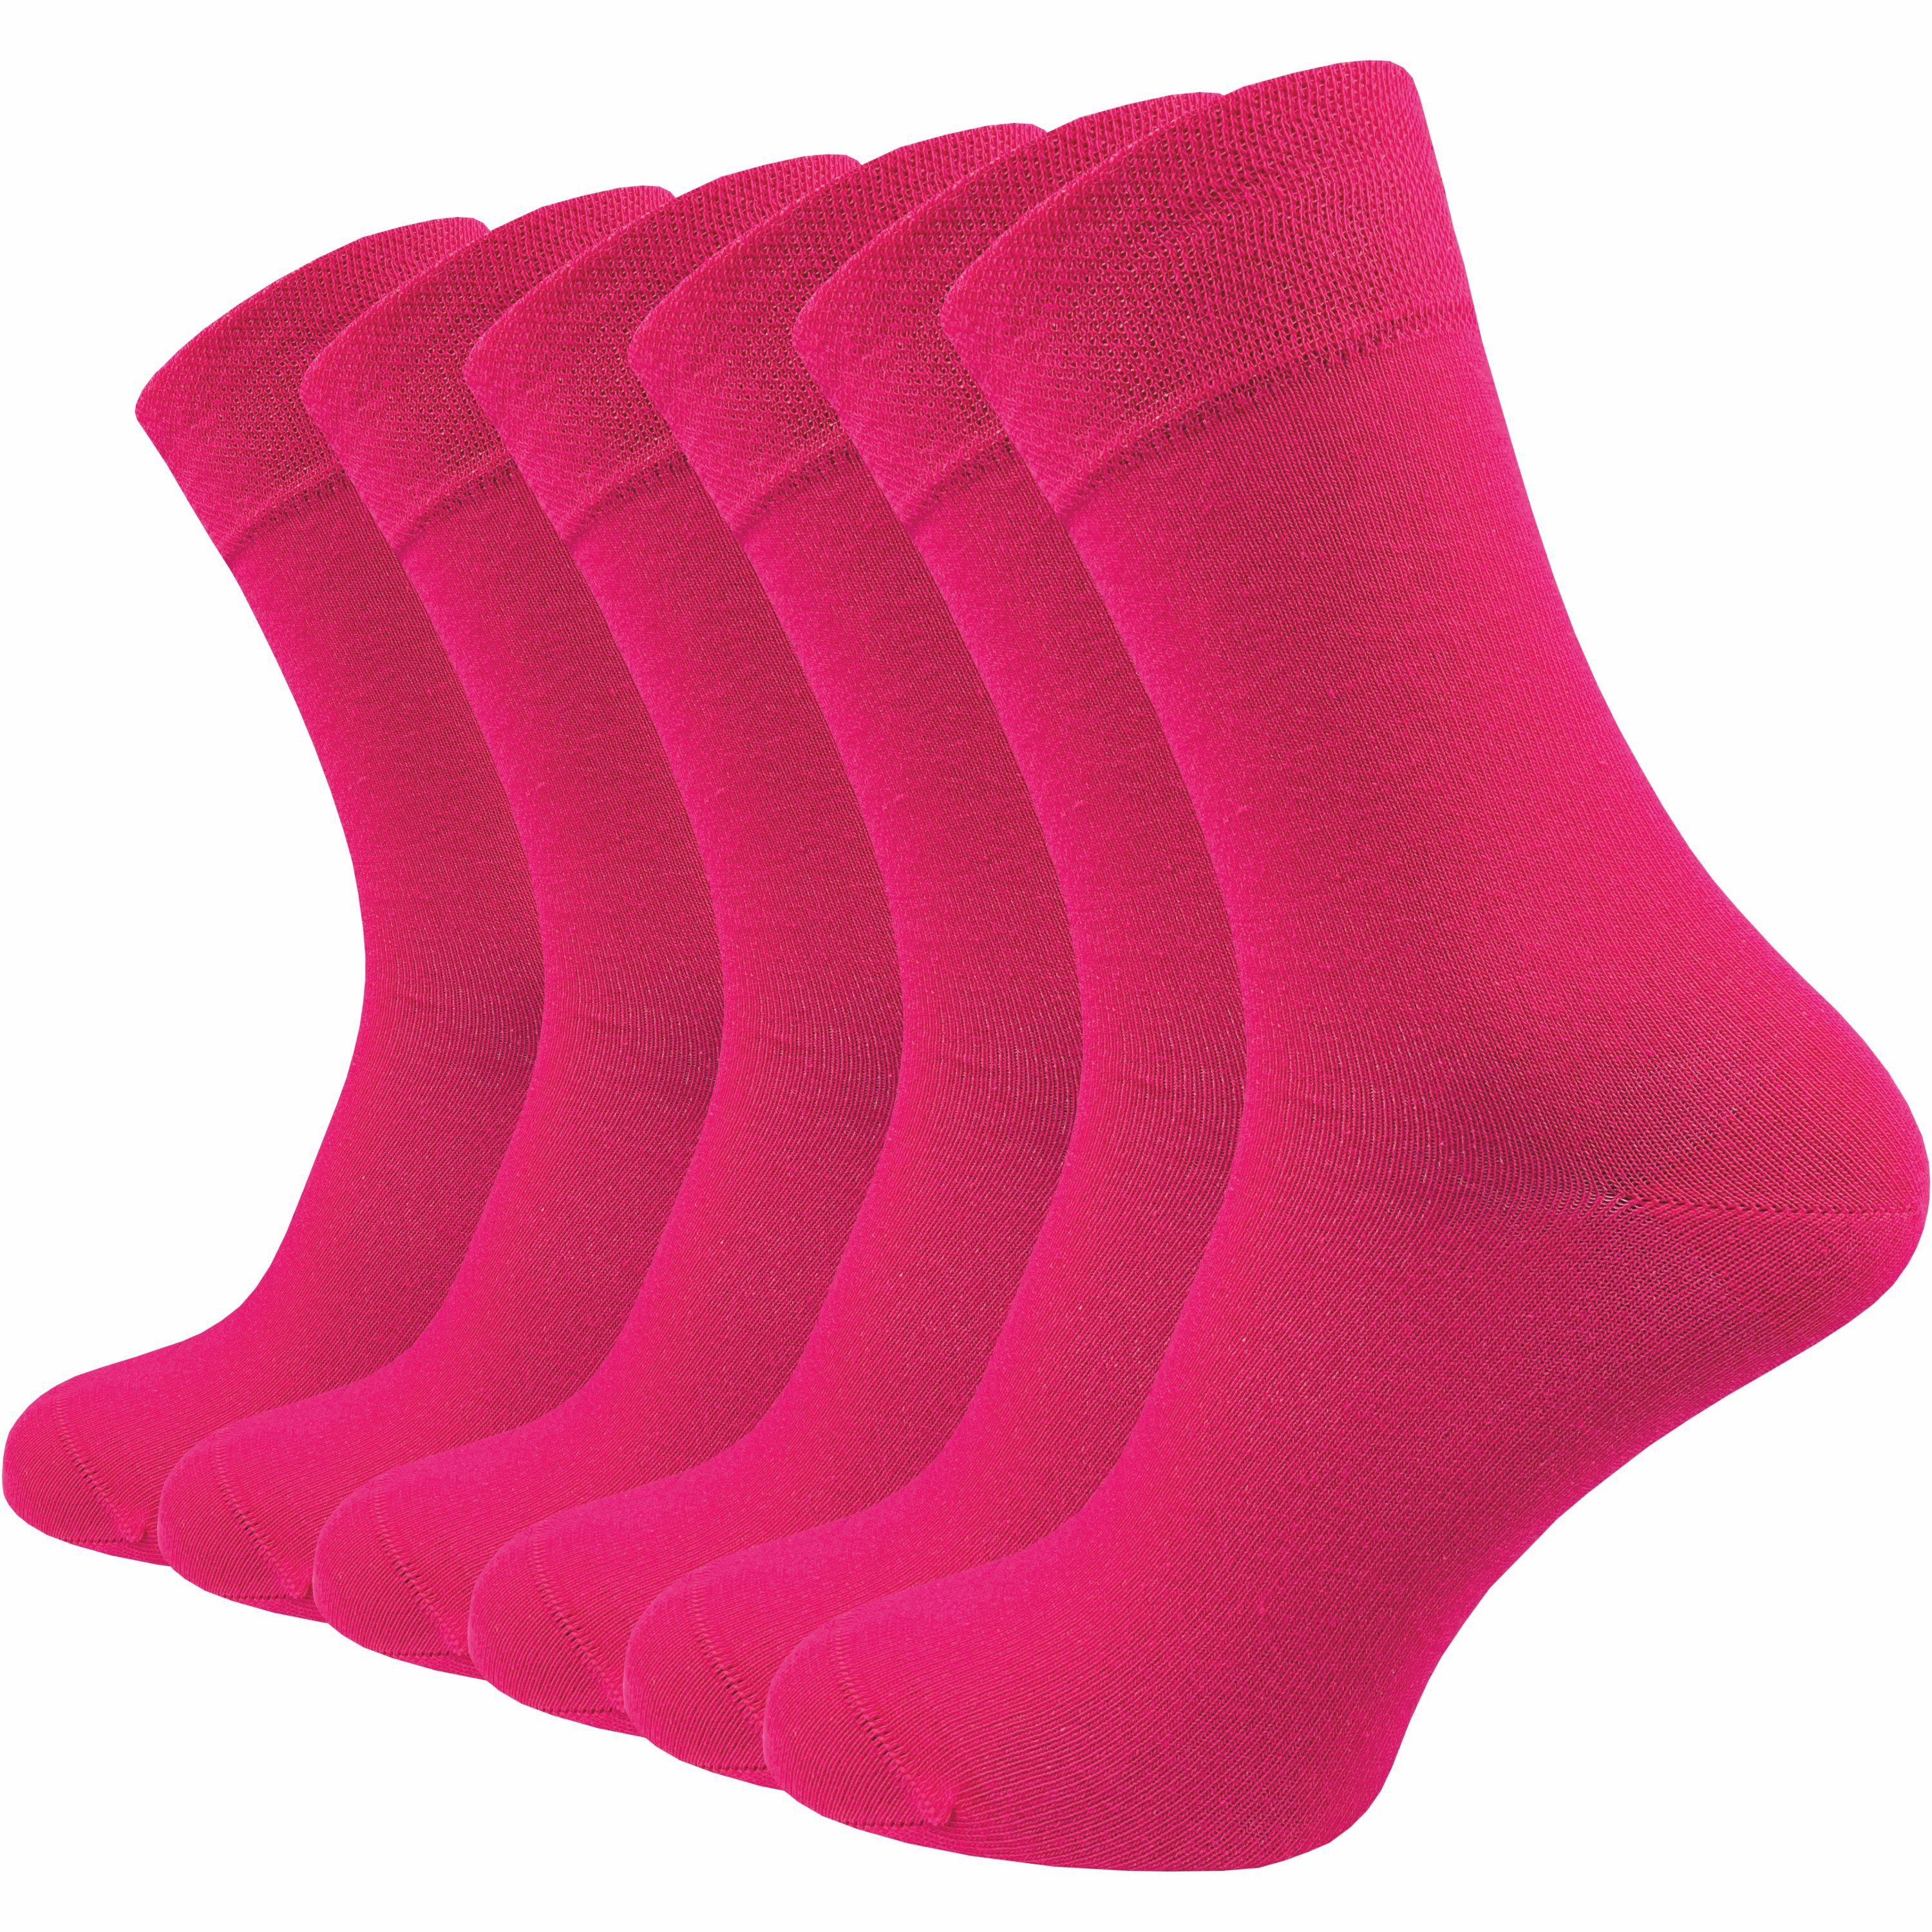 GAWILO Socken für Damen & Herren - Premium Komfortbund ohne drückende Naht (6 Paar) schwarz, grau & blau - aus hochwertiger, doppelt gekämmter Baumwolle fuchsia